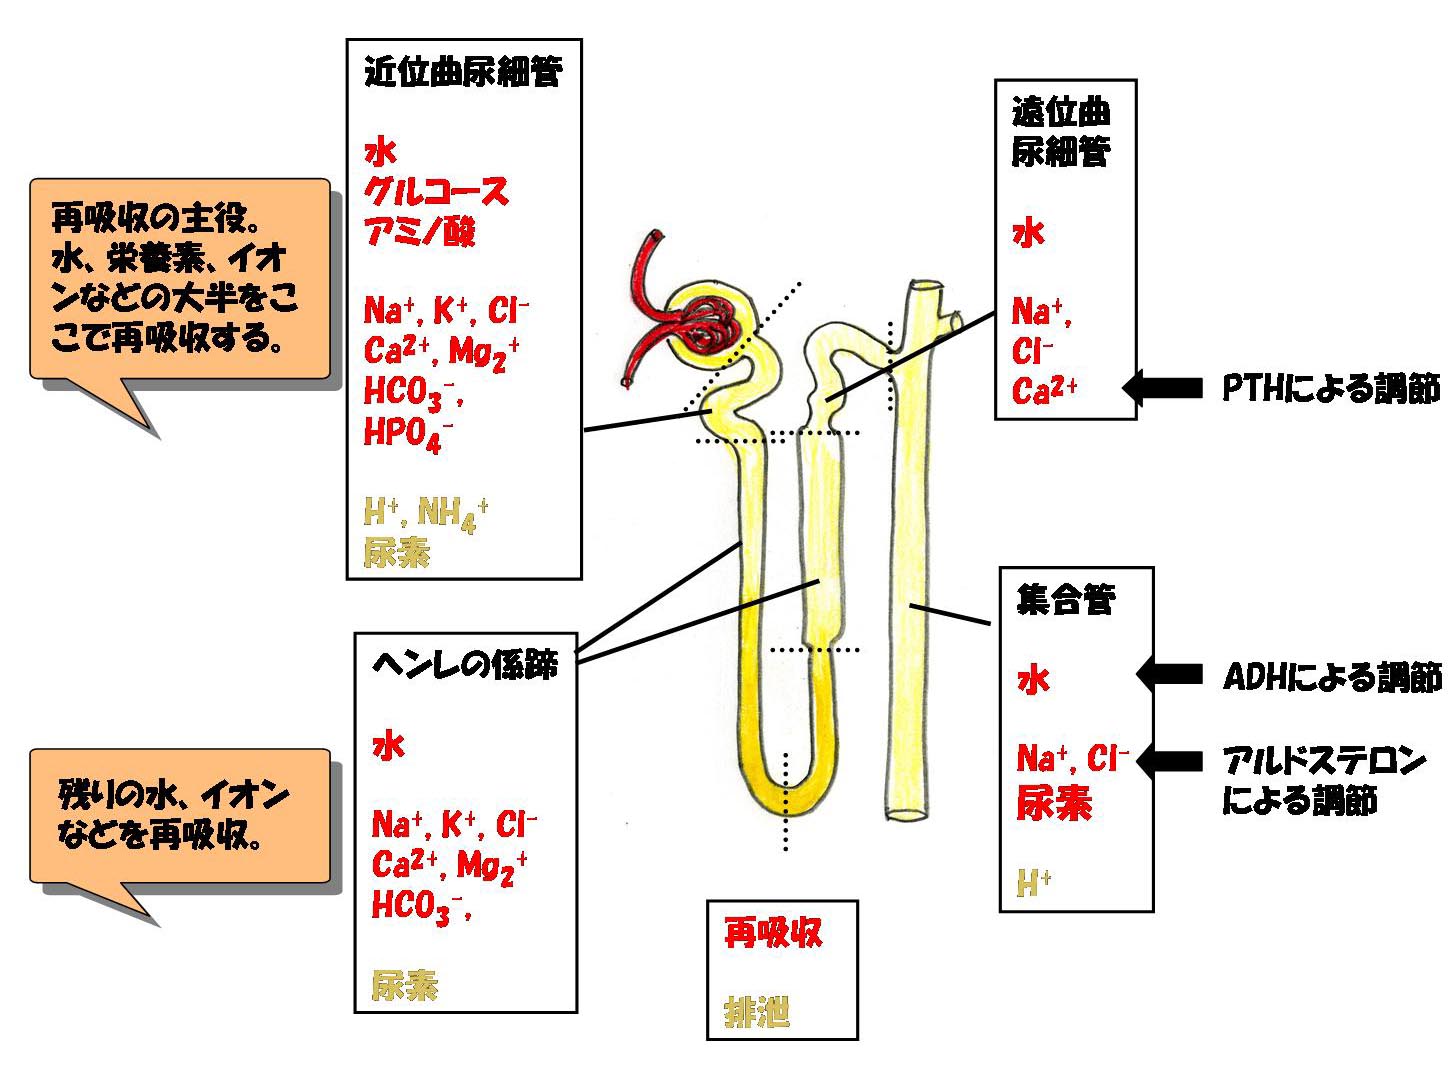 尿細管での再吸収を解説した図